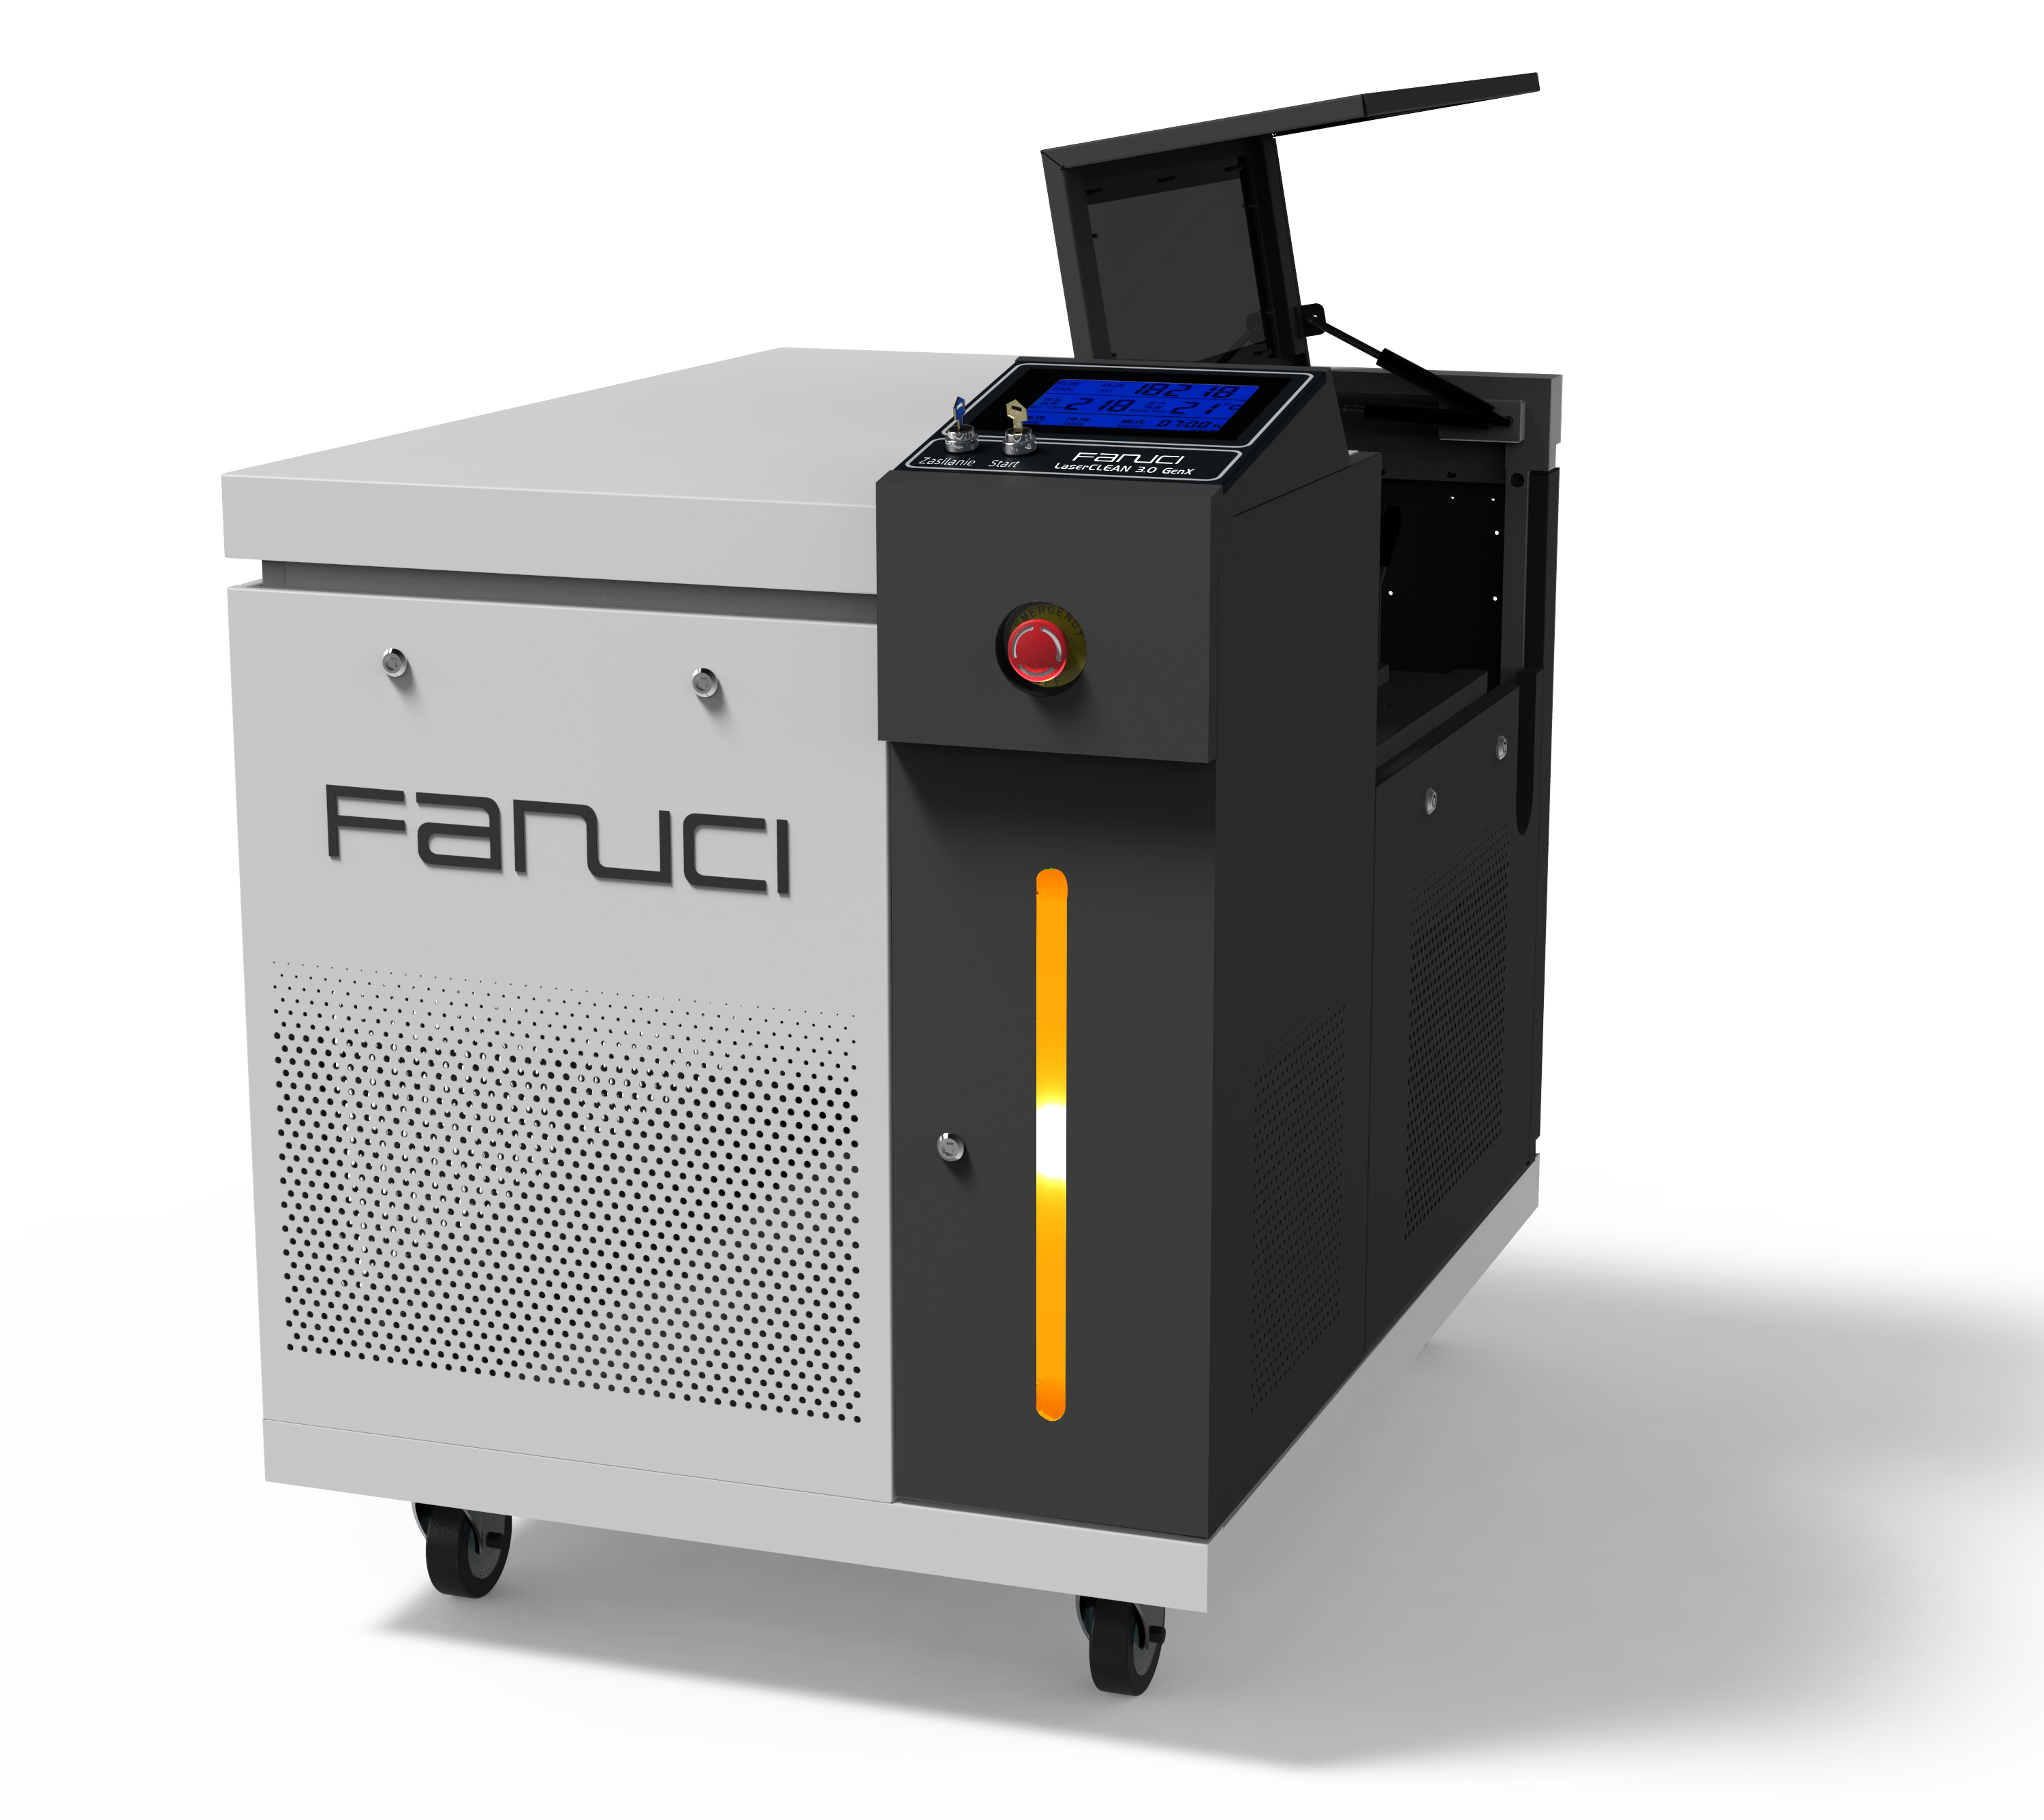 Kompakti FANUCI® Pro -laserhitsauskone neljä yhdessä toimitetaan Eurooppaan